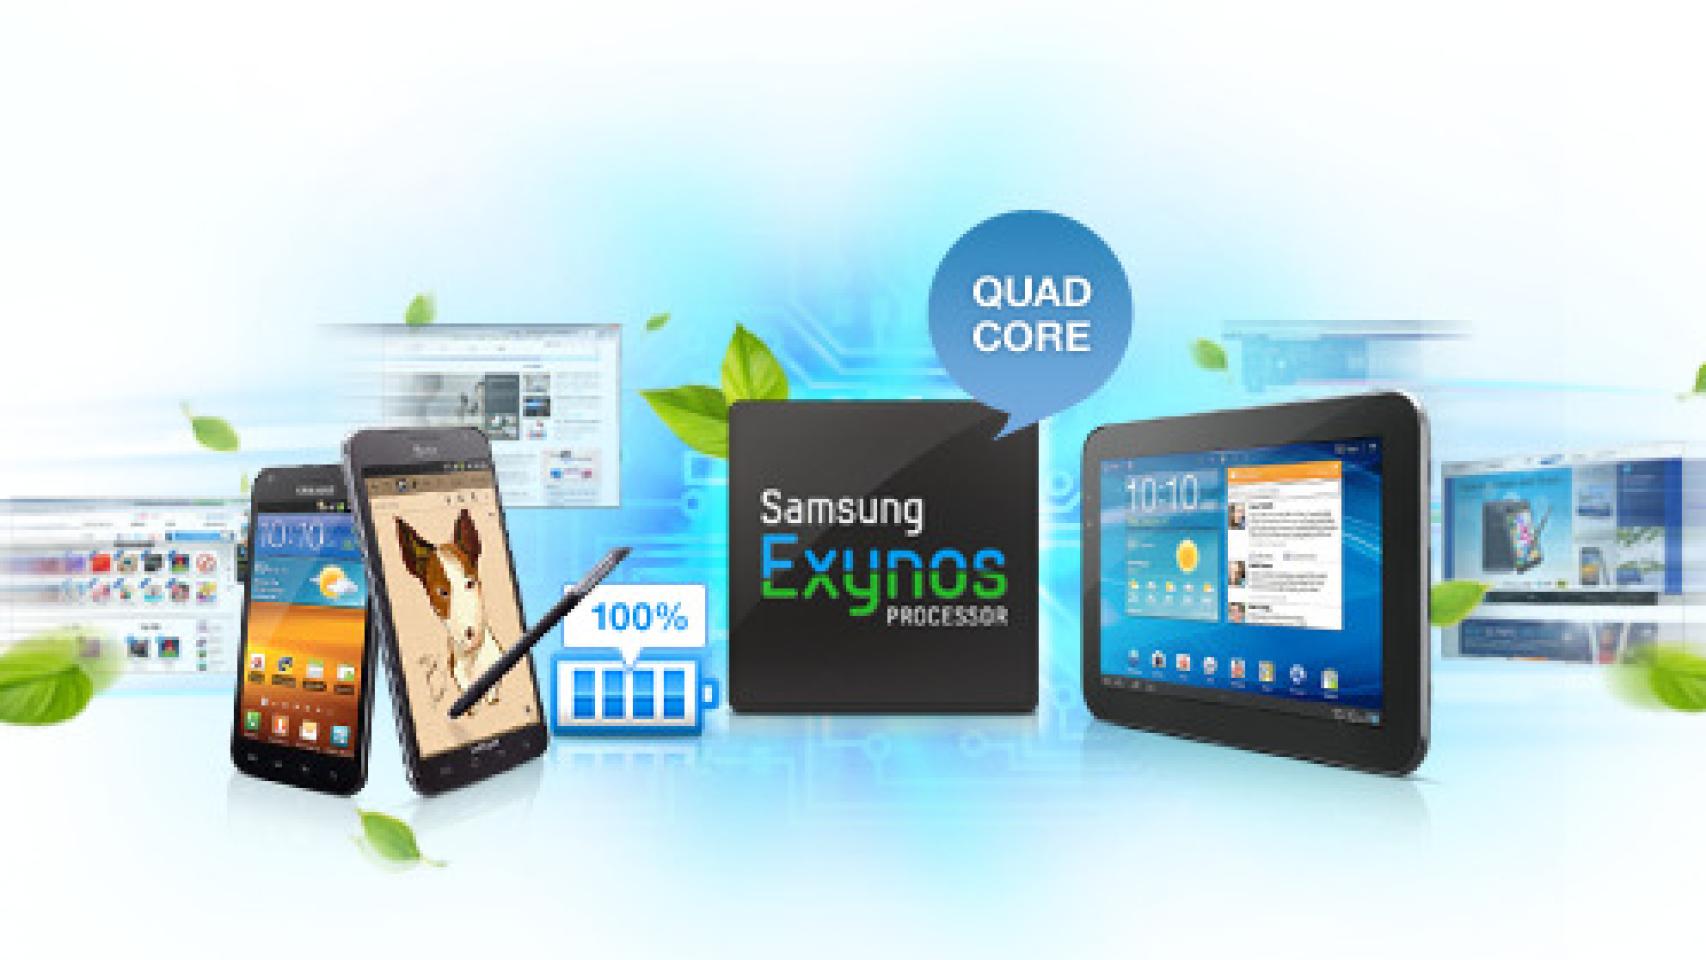 El Samsung Galaxy S3 tendrá el procesador Exynos 4 quad-core a 1.4GHz